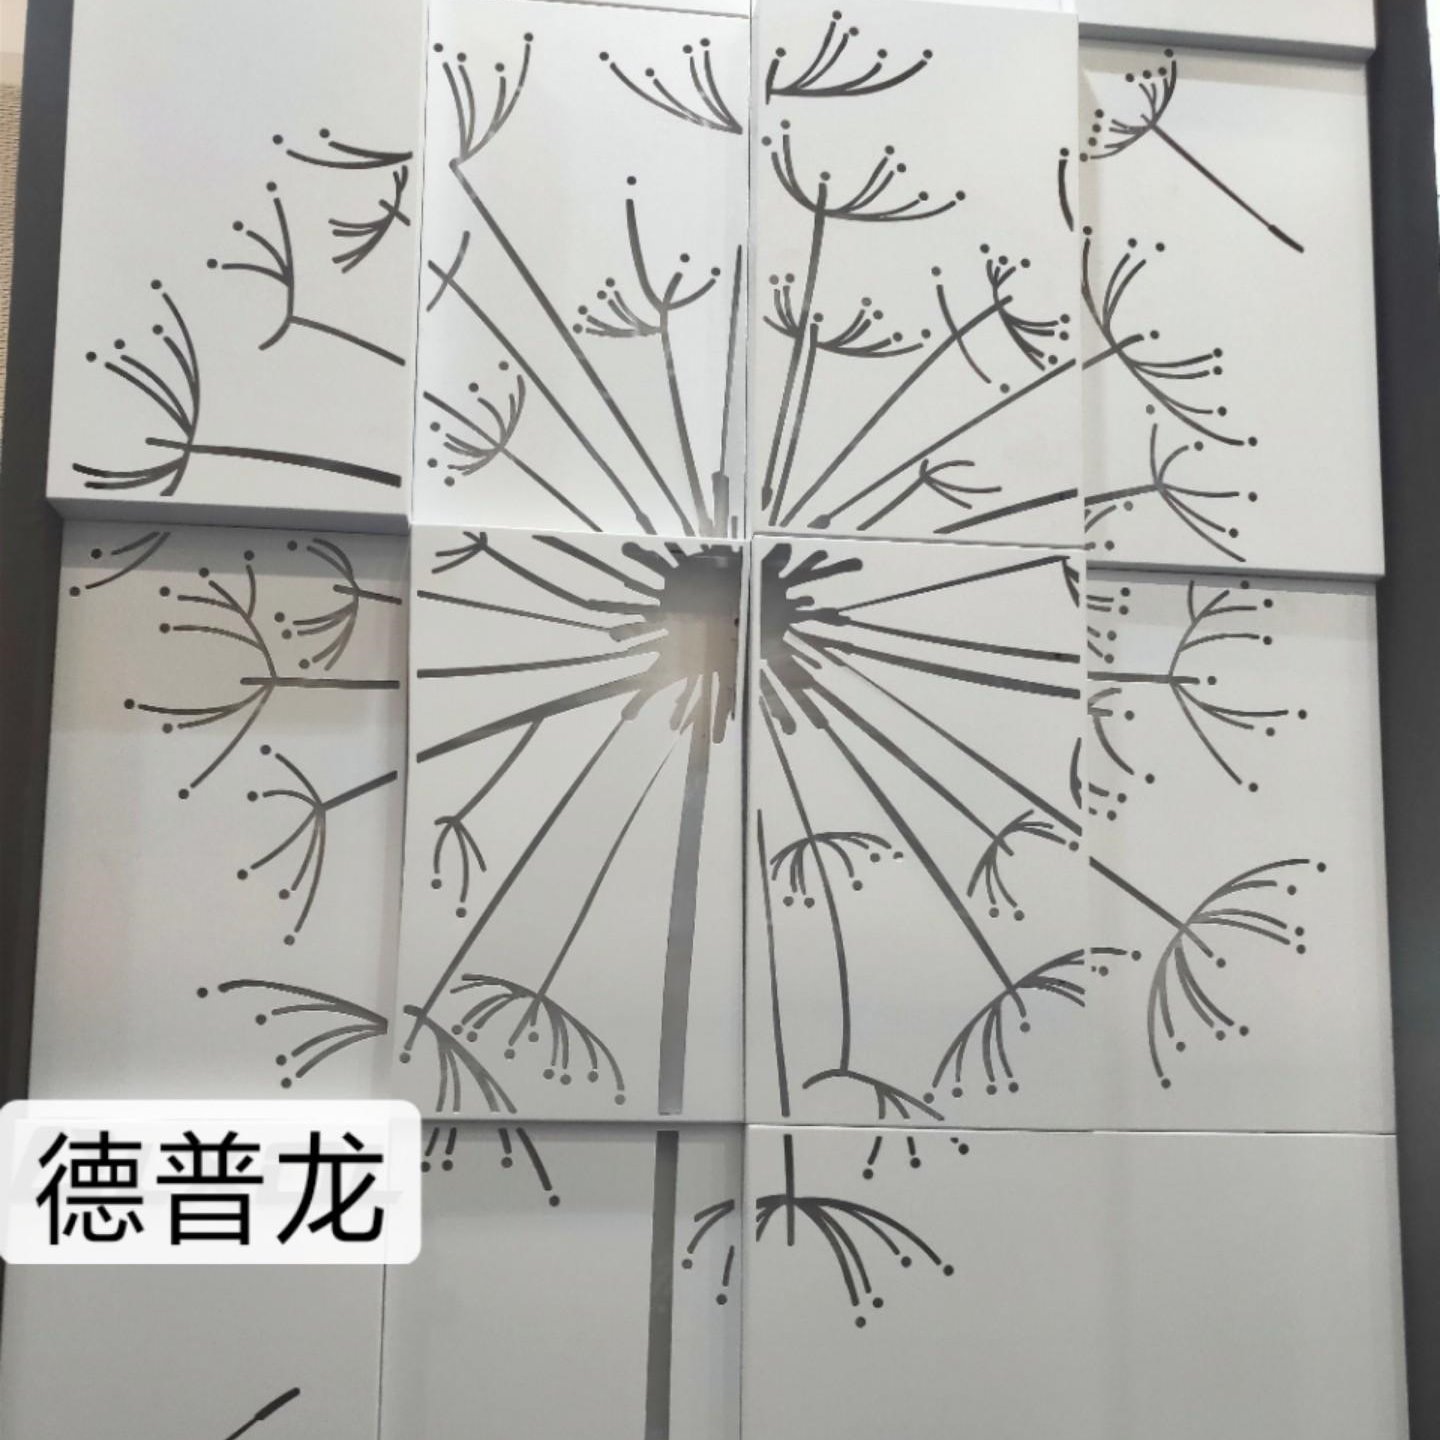 办公楼温馨一处白色蒲公英雕刻铝单板墙面装饰   美轮美奂铝单板创意设计  造型铝单板定制厂家